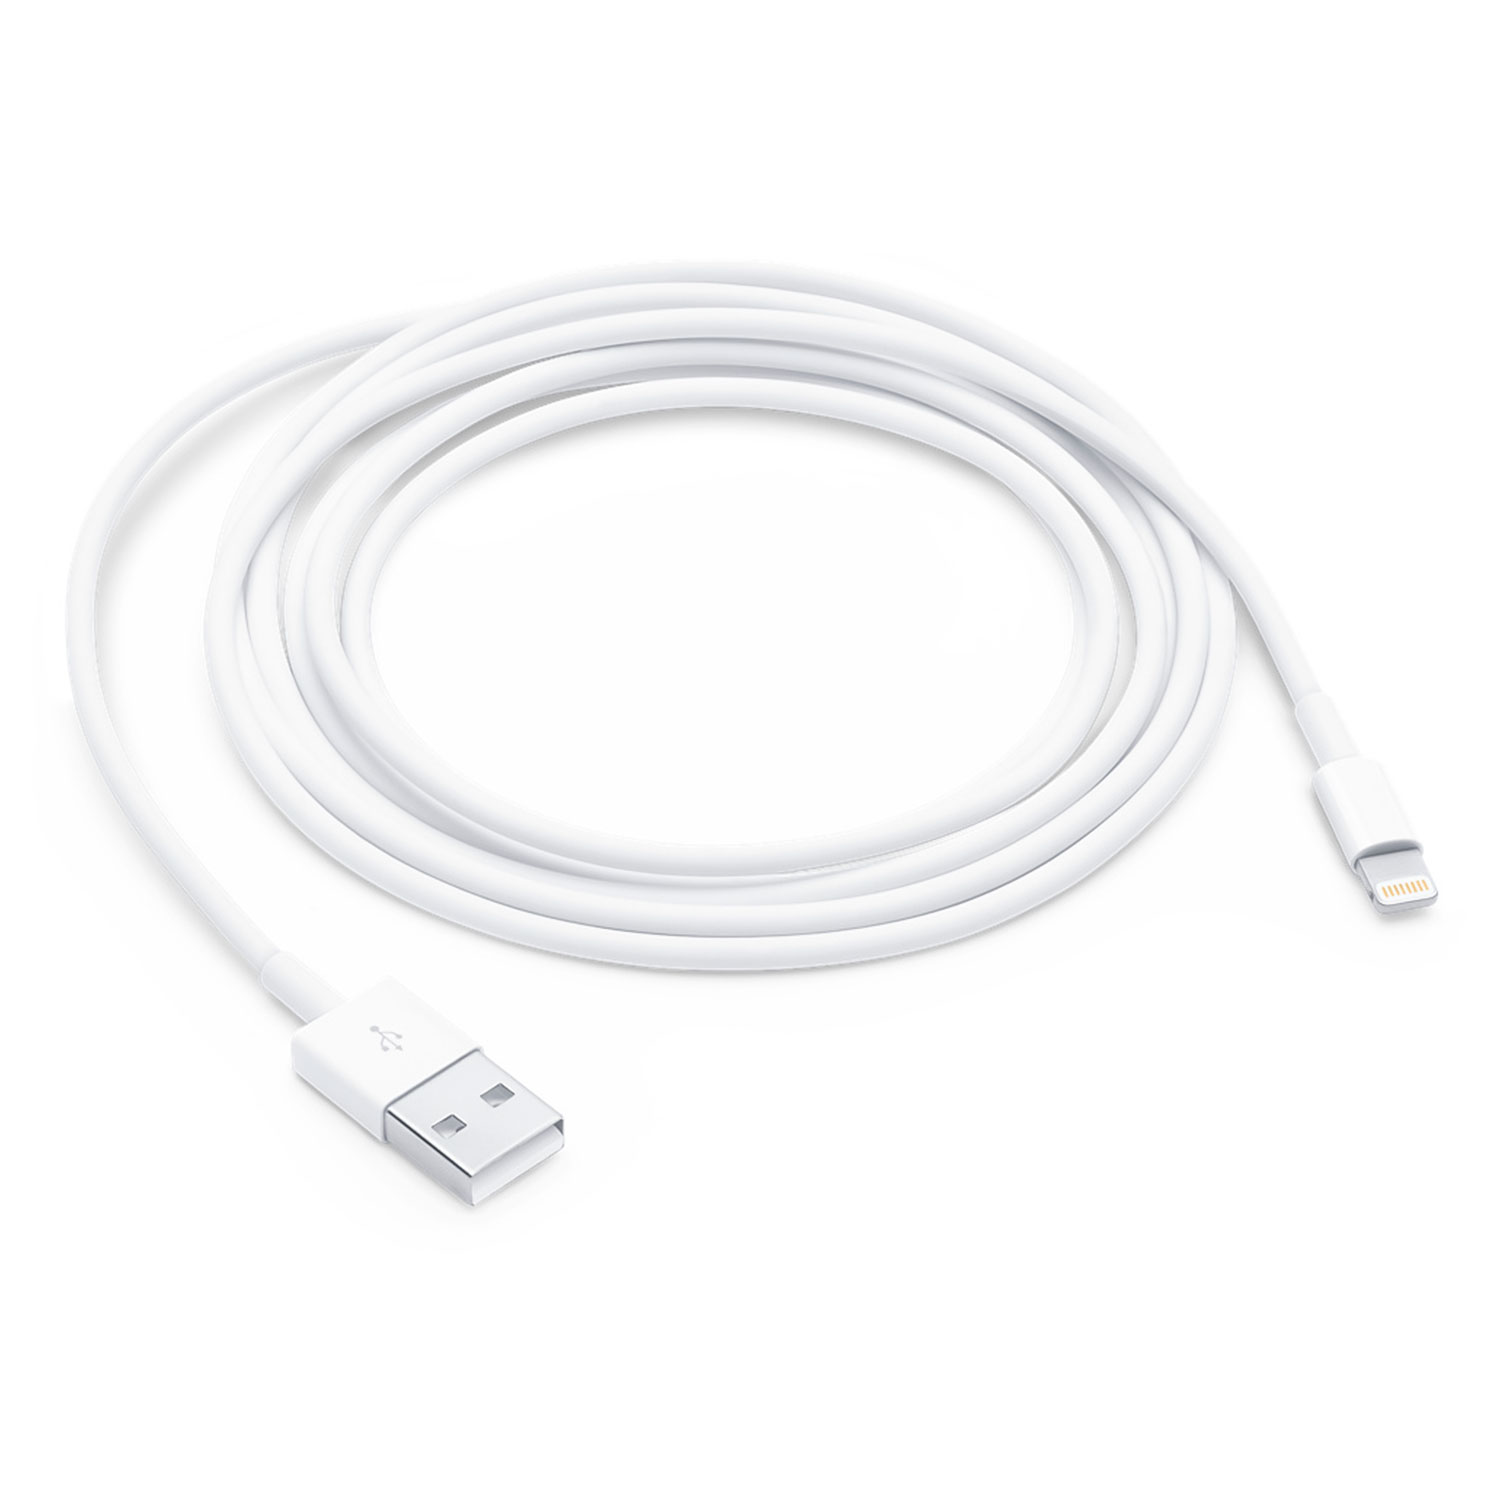 Cabo Apple MD819ZM/A Original USB 2 Metros - Branco (Deslacrado)